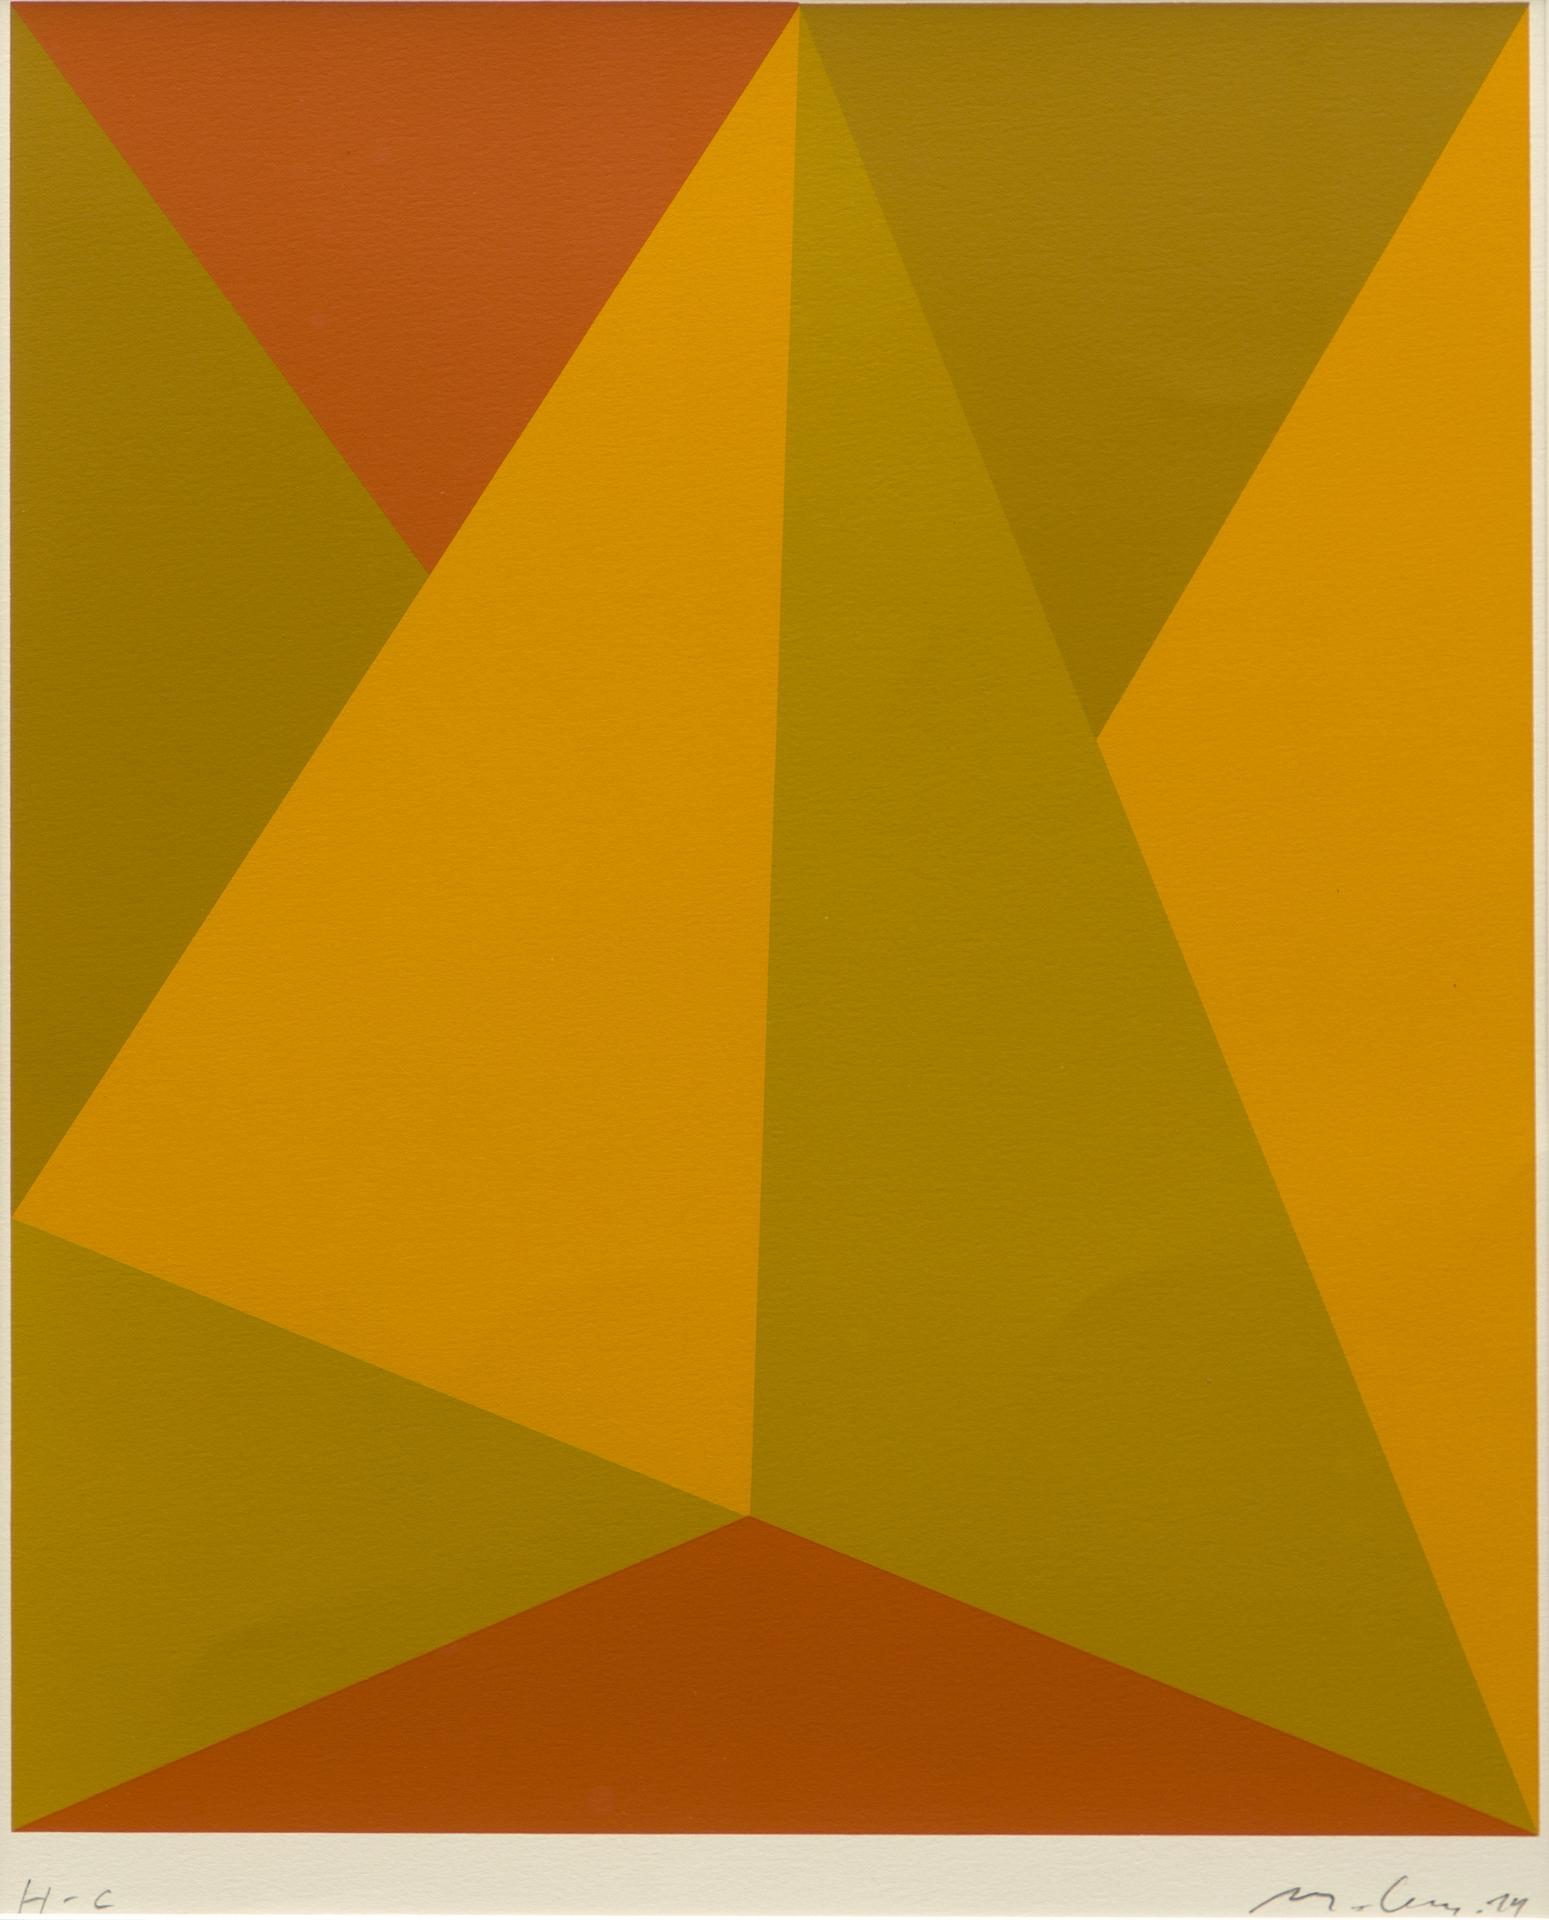 Guido Molinari (1933-2004) - Triangulaire jaune-orange, 1974